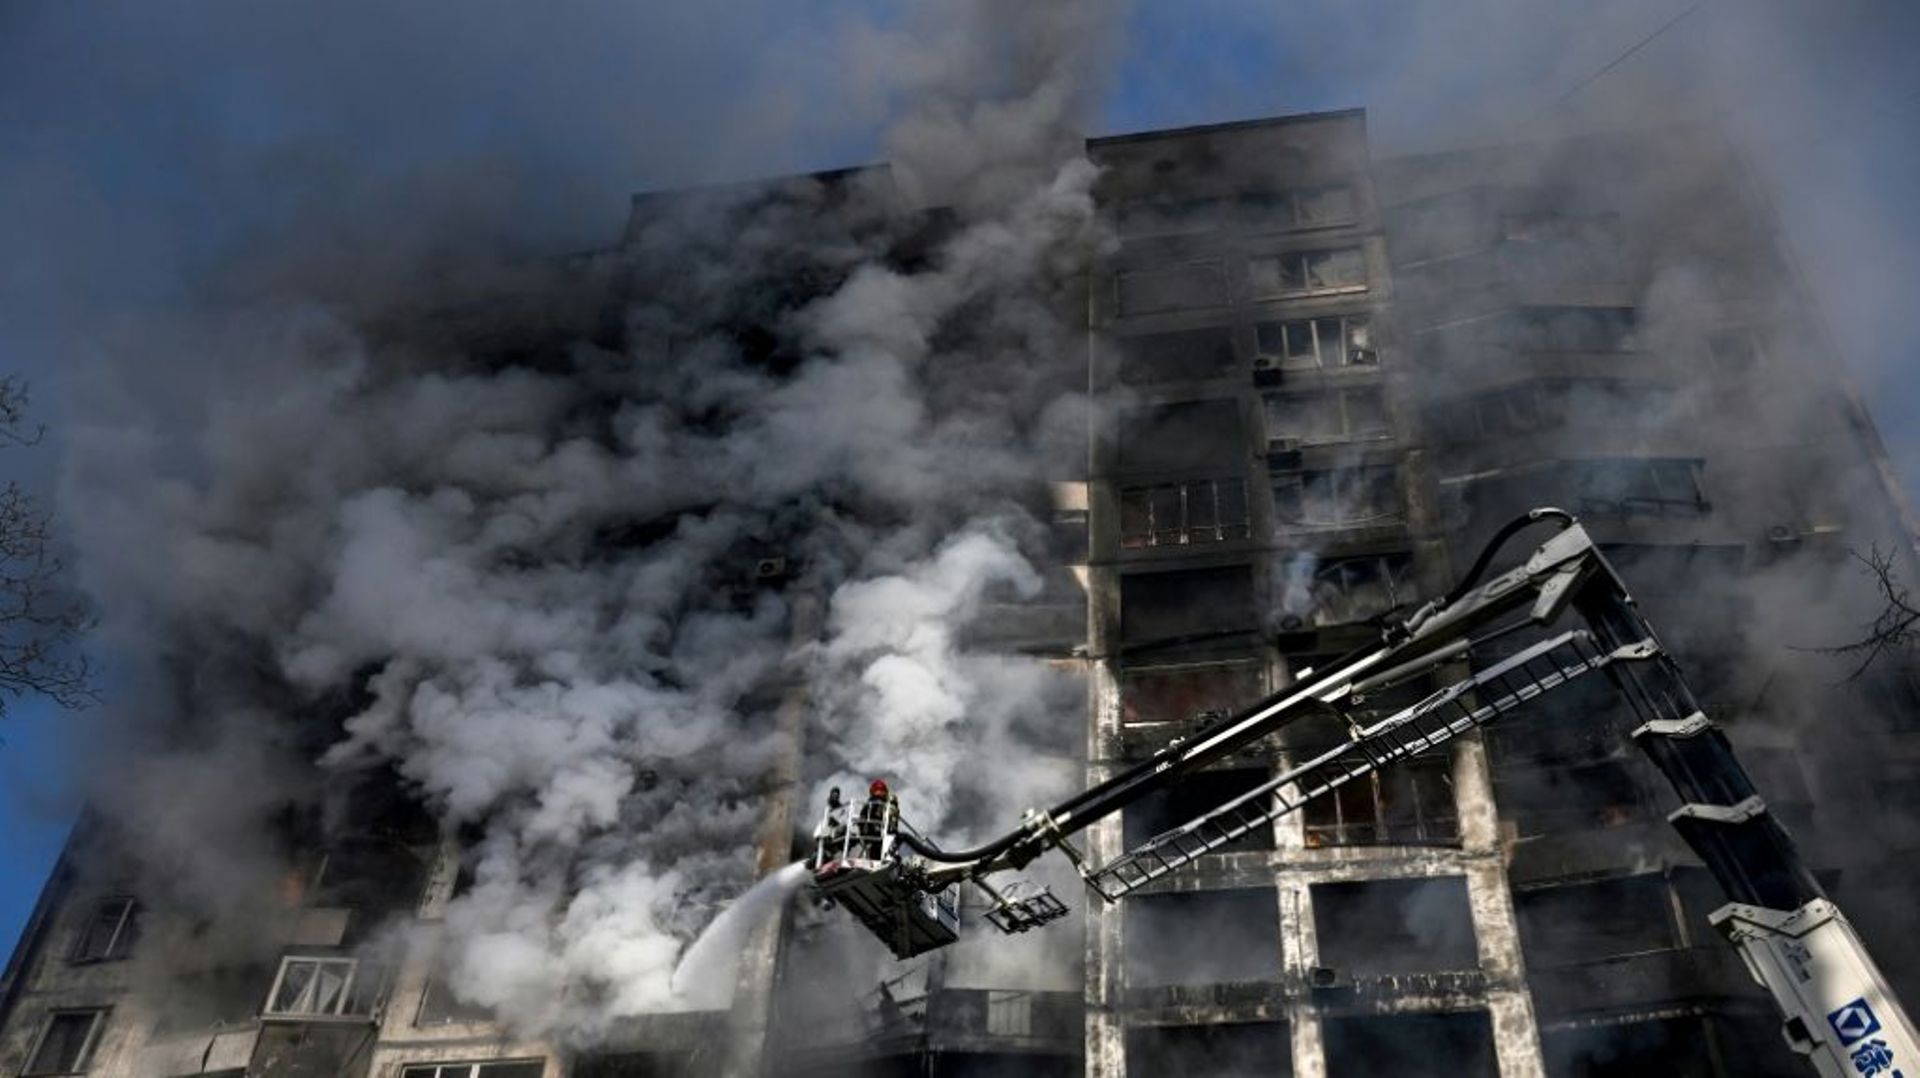 Des pompiers sur une grue éteignent un incendie dans un immeuble résidentiel, à Kiev le 15 mars 2022
